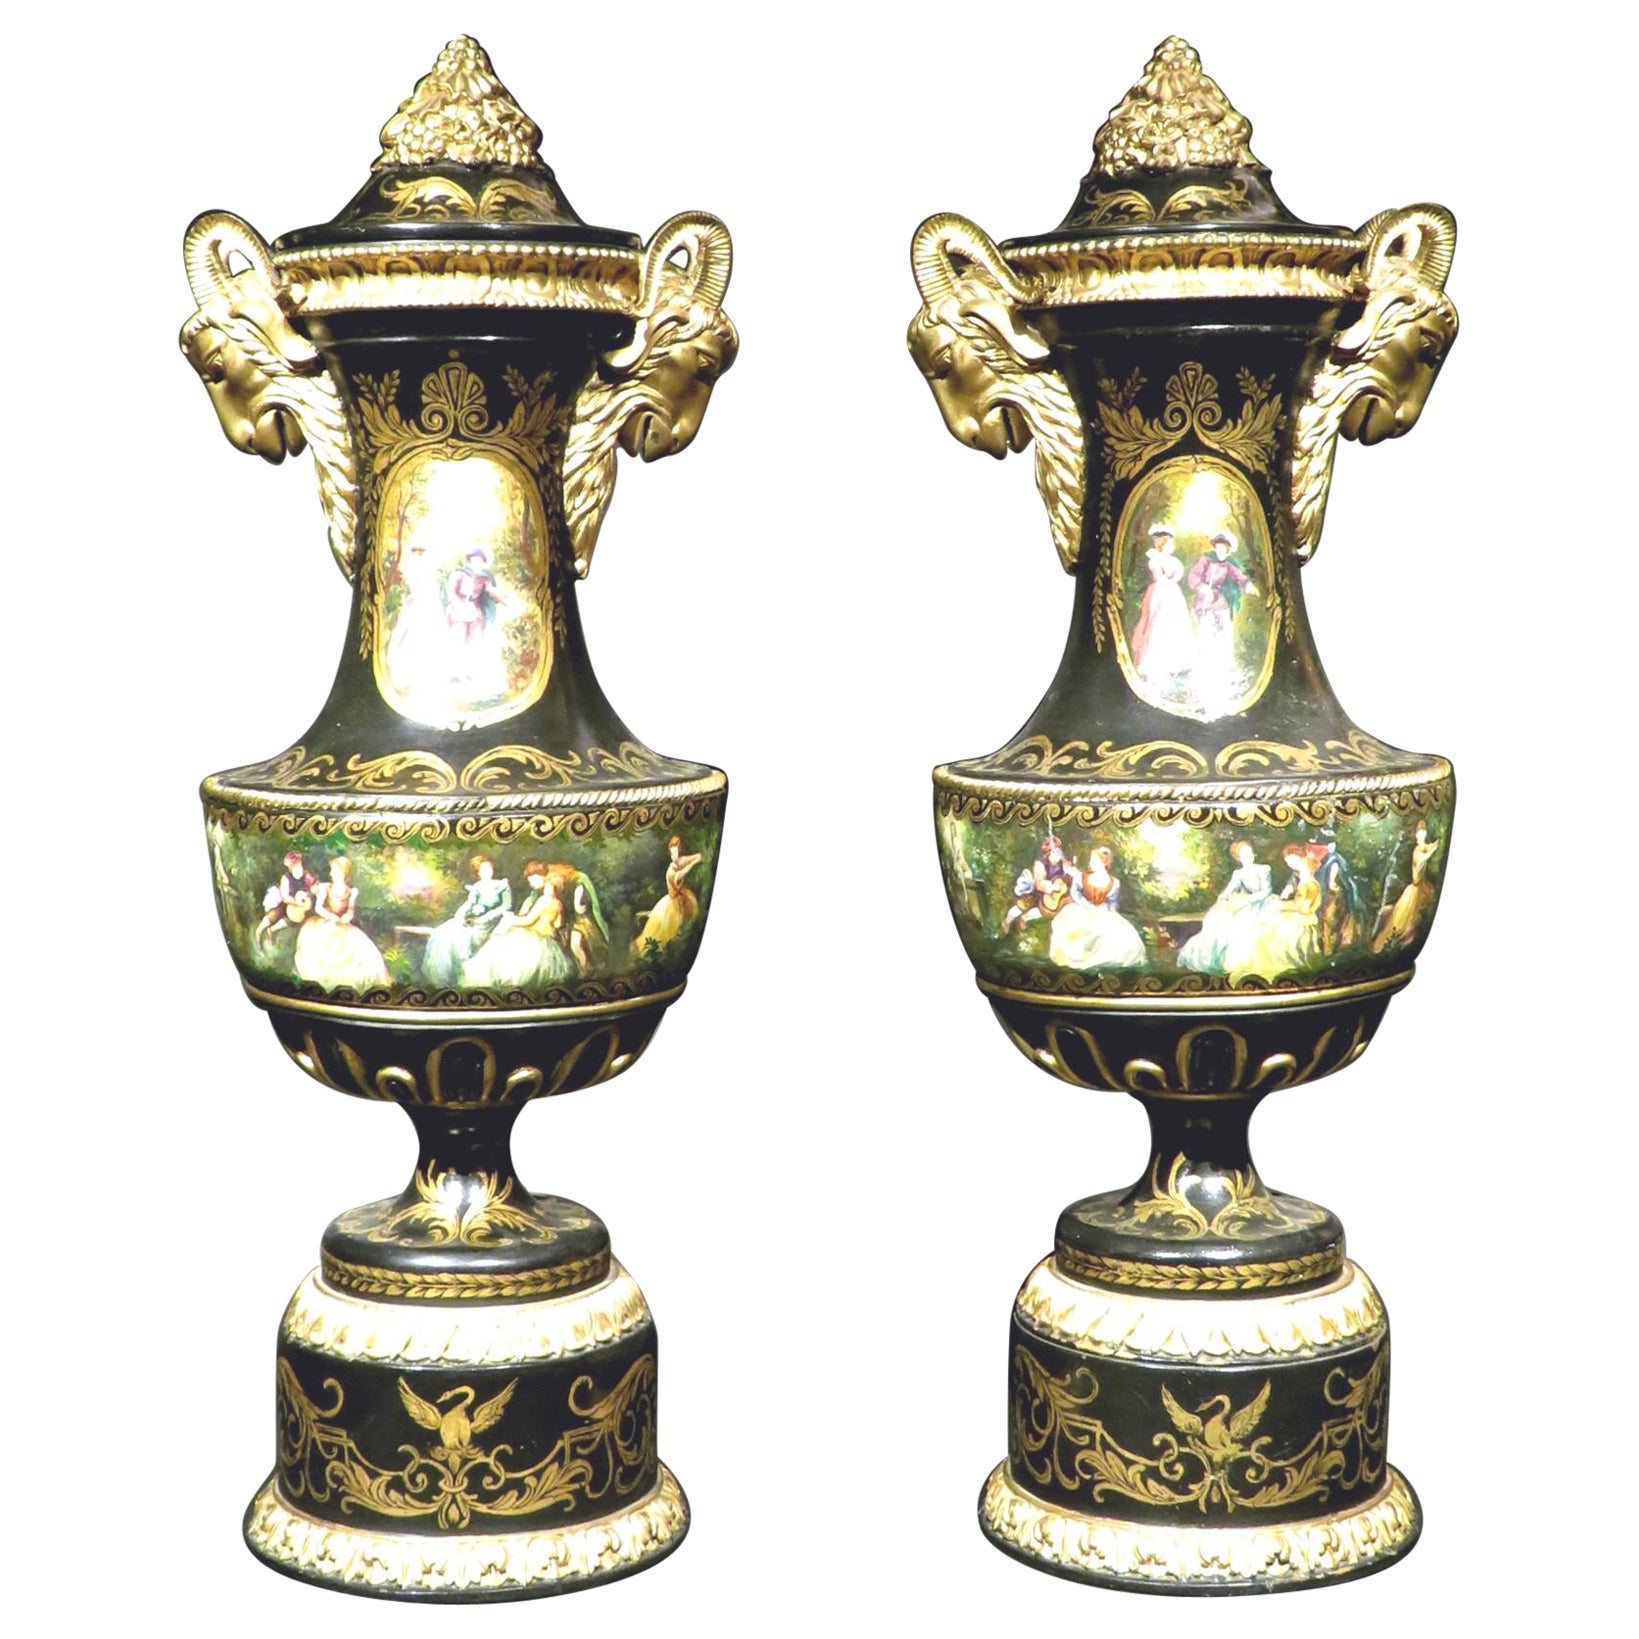 Exceptionnelle paire d'urnes en bois peintes à la main de style néoclassique Revive, vers 1880